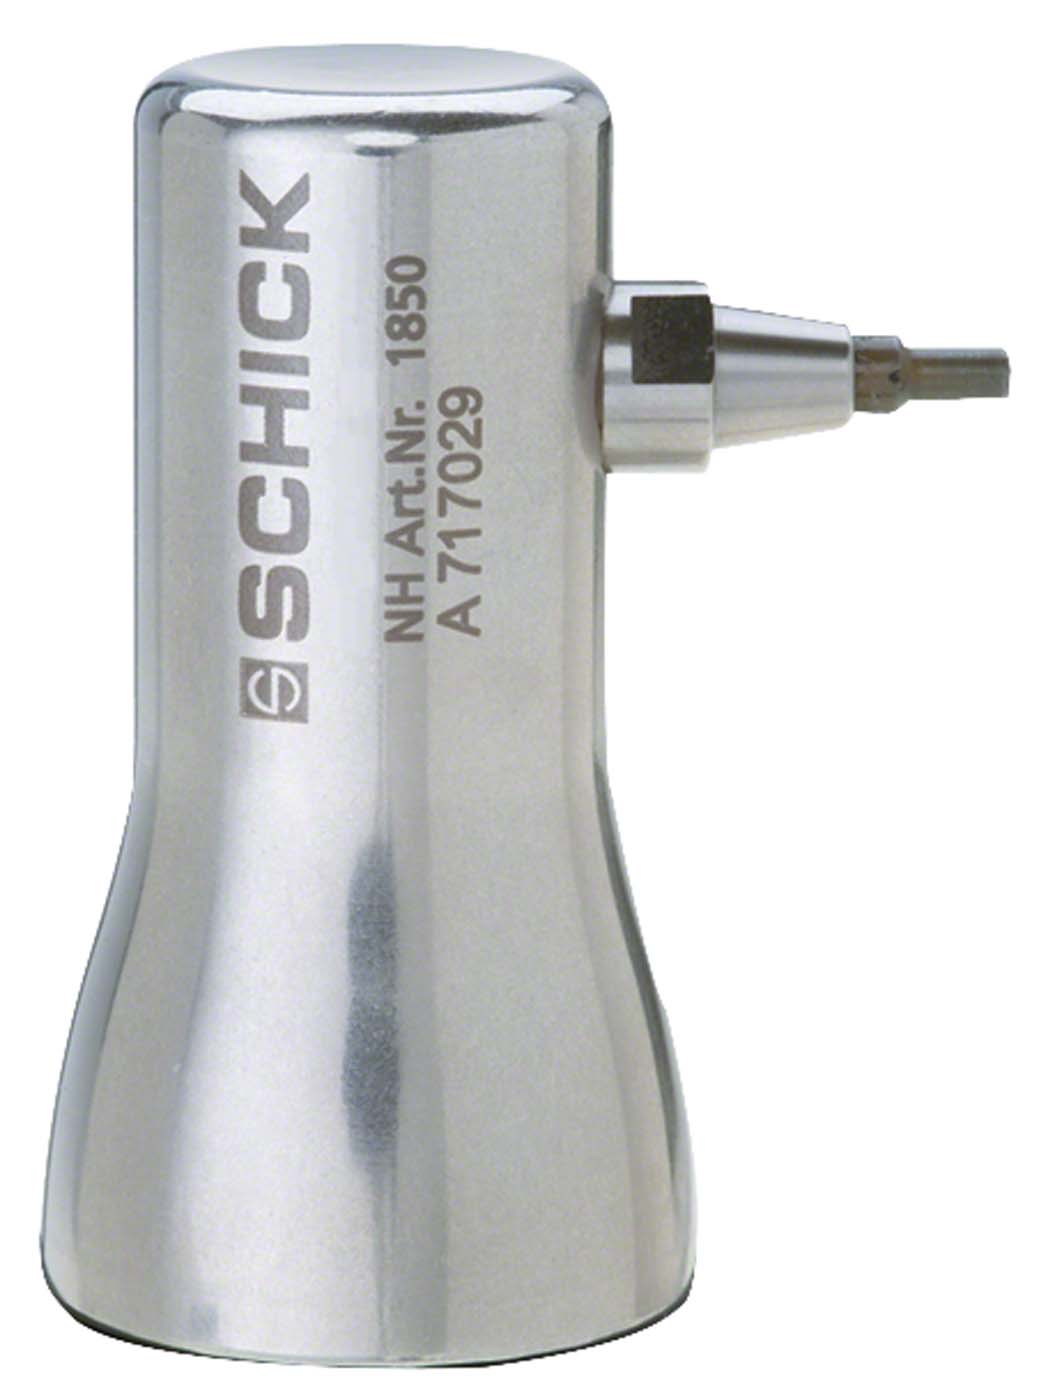 Micromotor Niethammer Schick